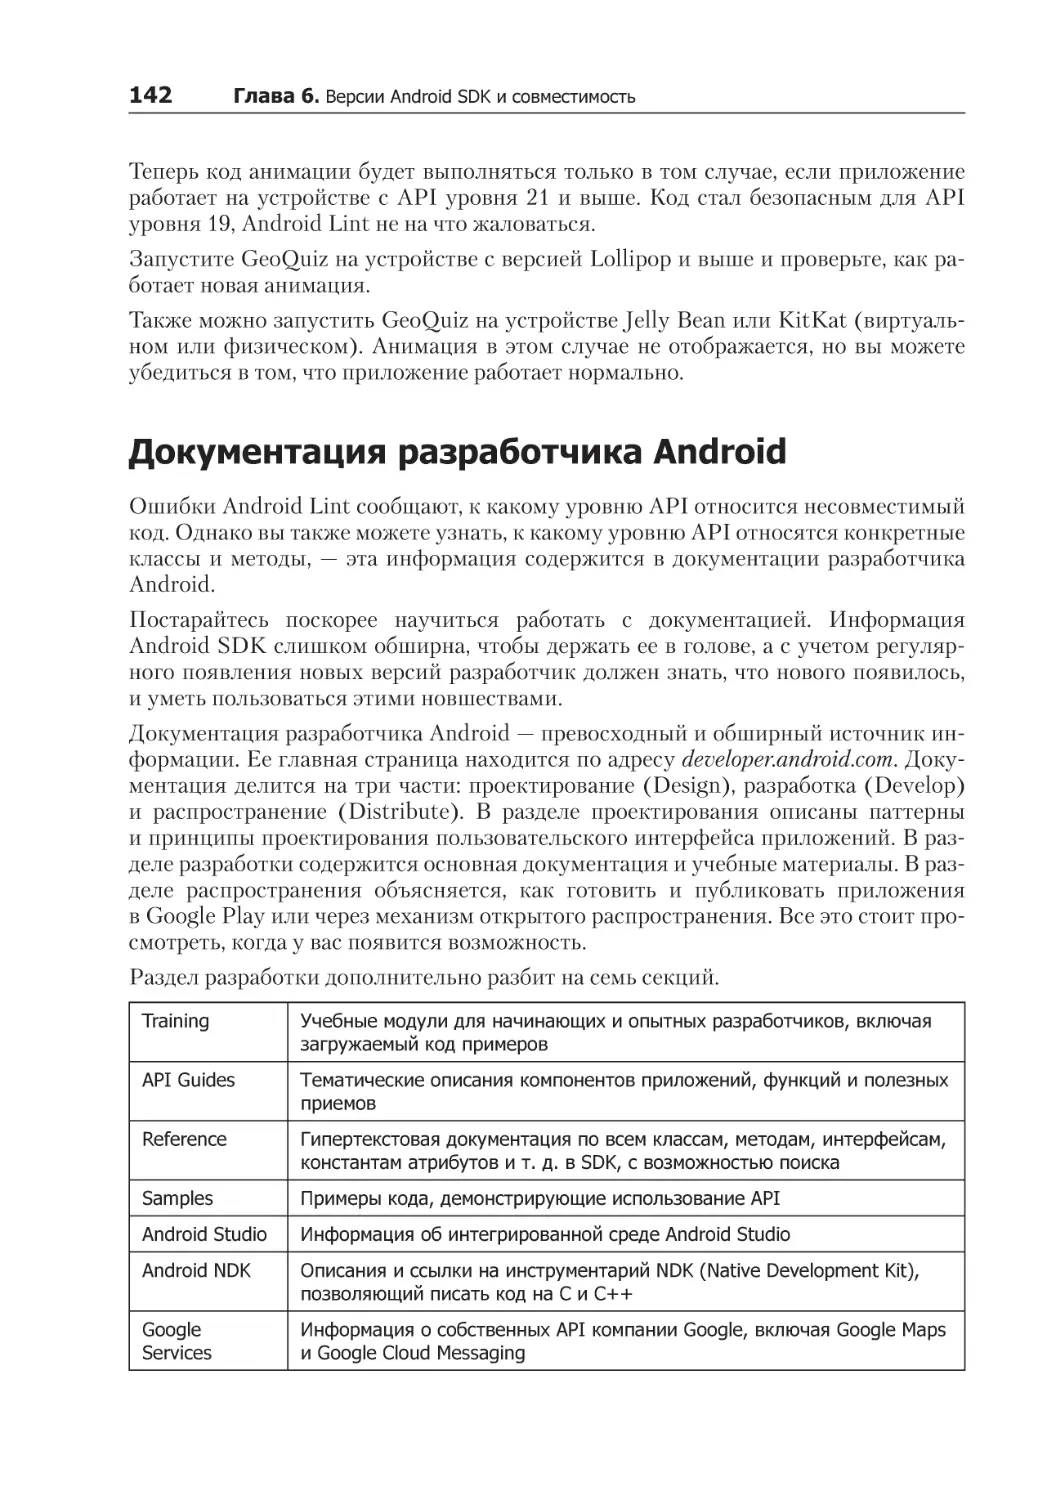 Документация разработчика Android